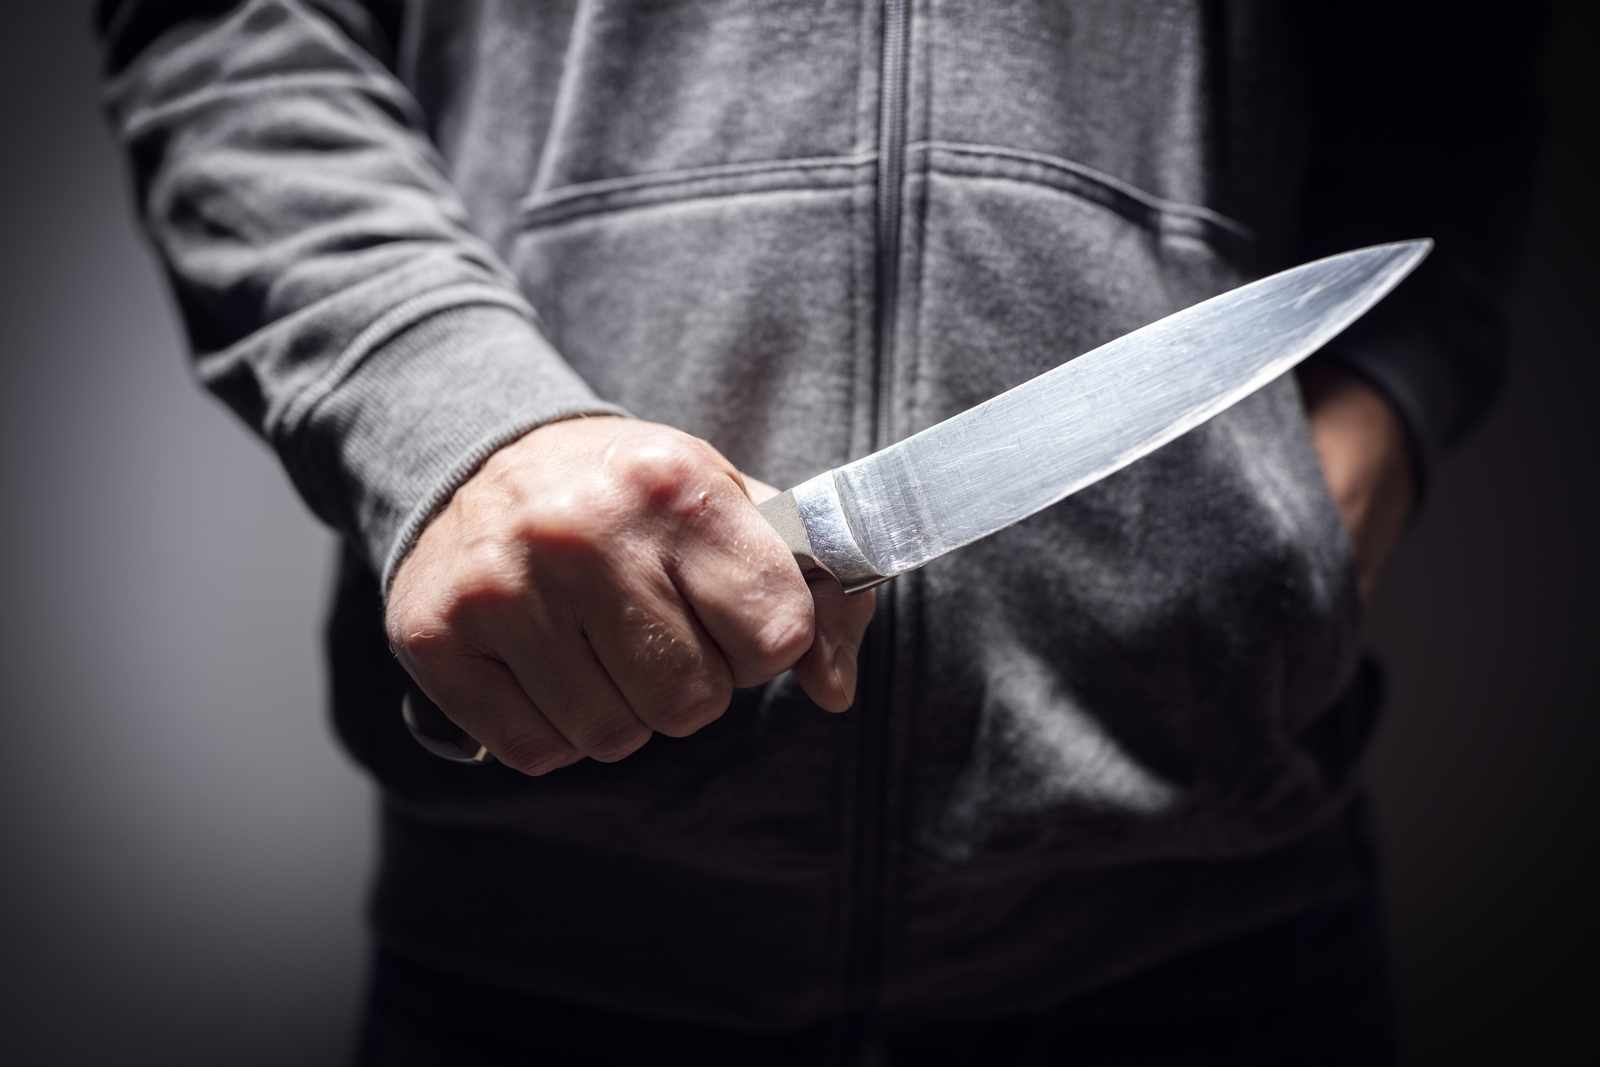 Τρόμος για 16χρονο έξω από τα σχολεία της Γκράβας: Του επιτέθηκε με μαχαίρι 17χρονος για να τον ληστέψει